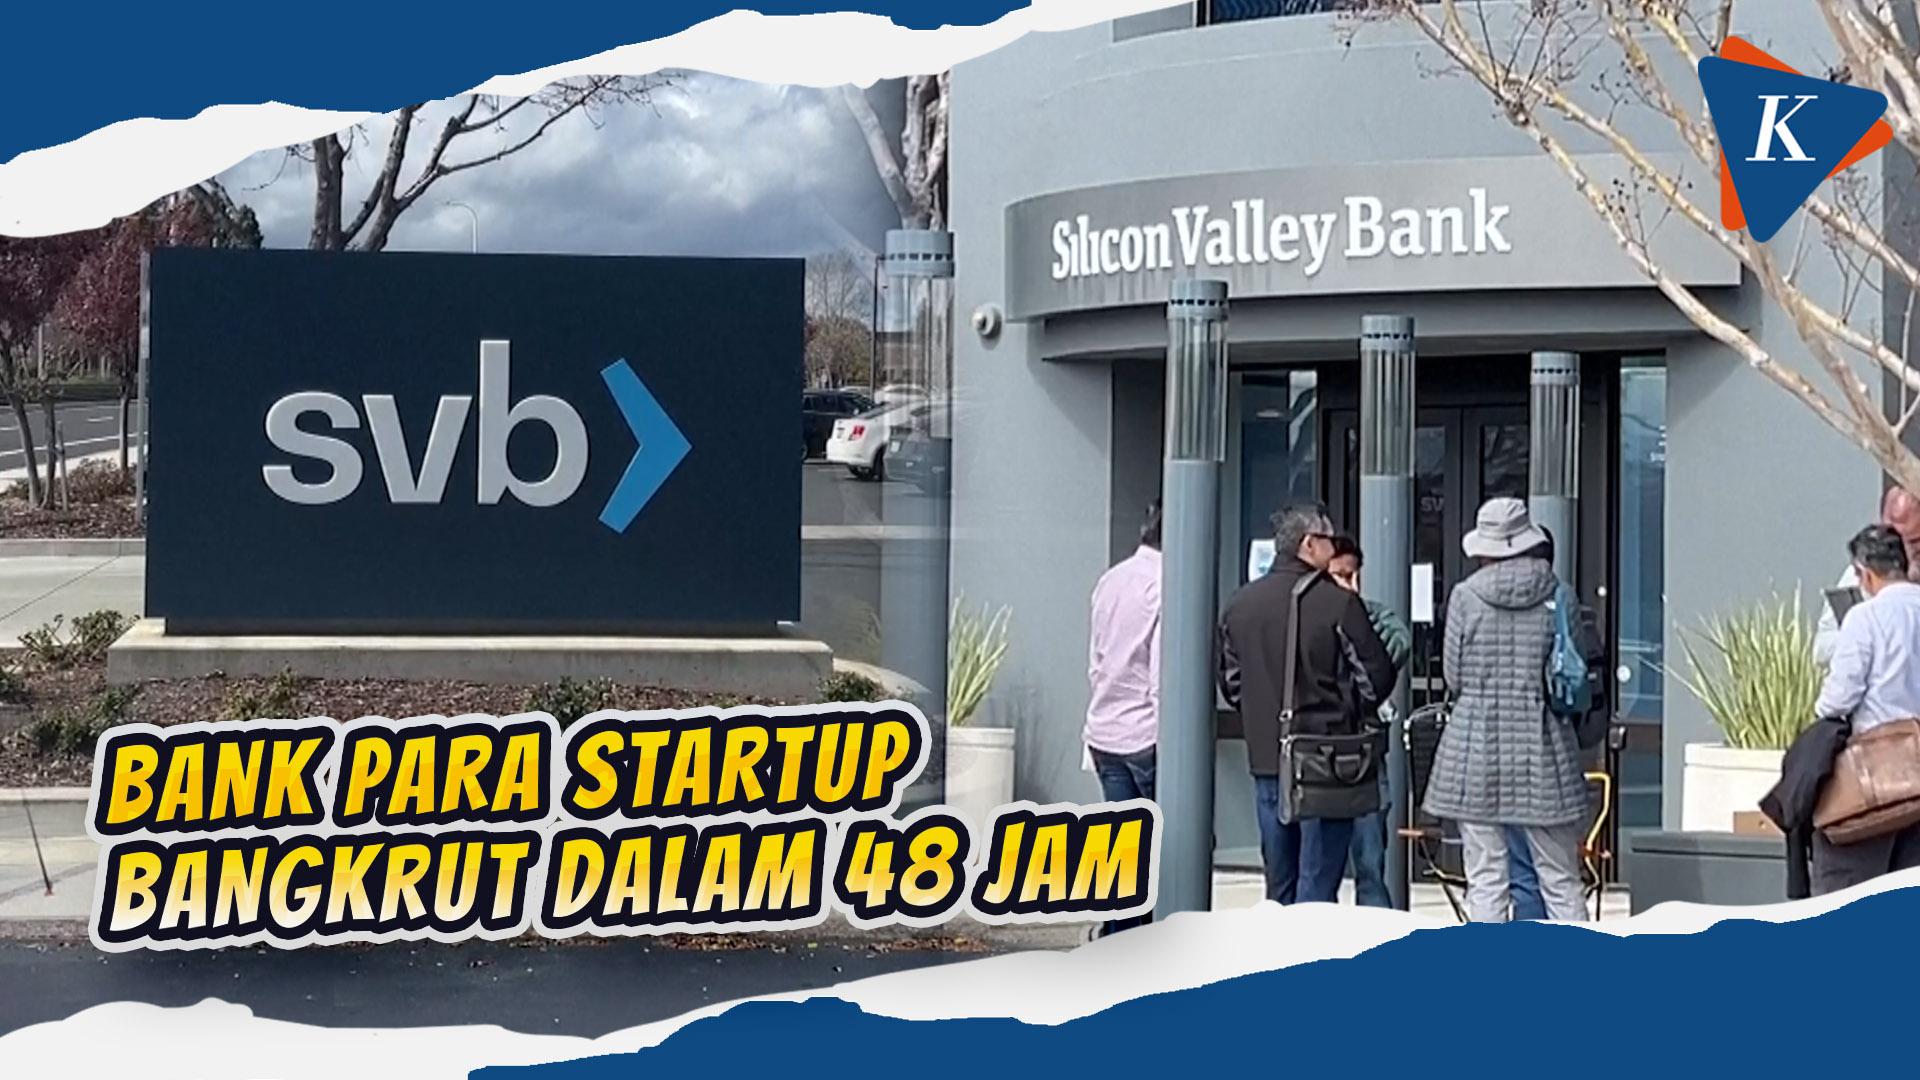 Silicon Valley Bank Bangkrut, Indonesia Kena Dampaknya?